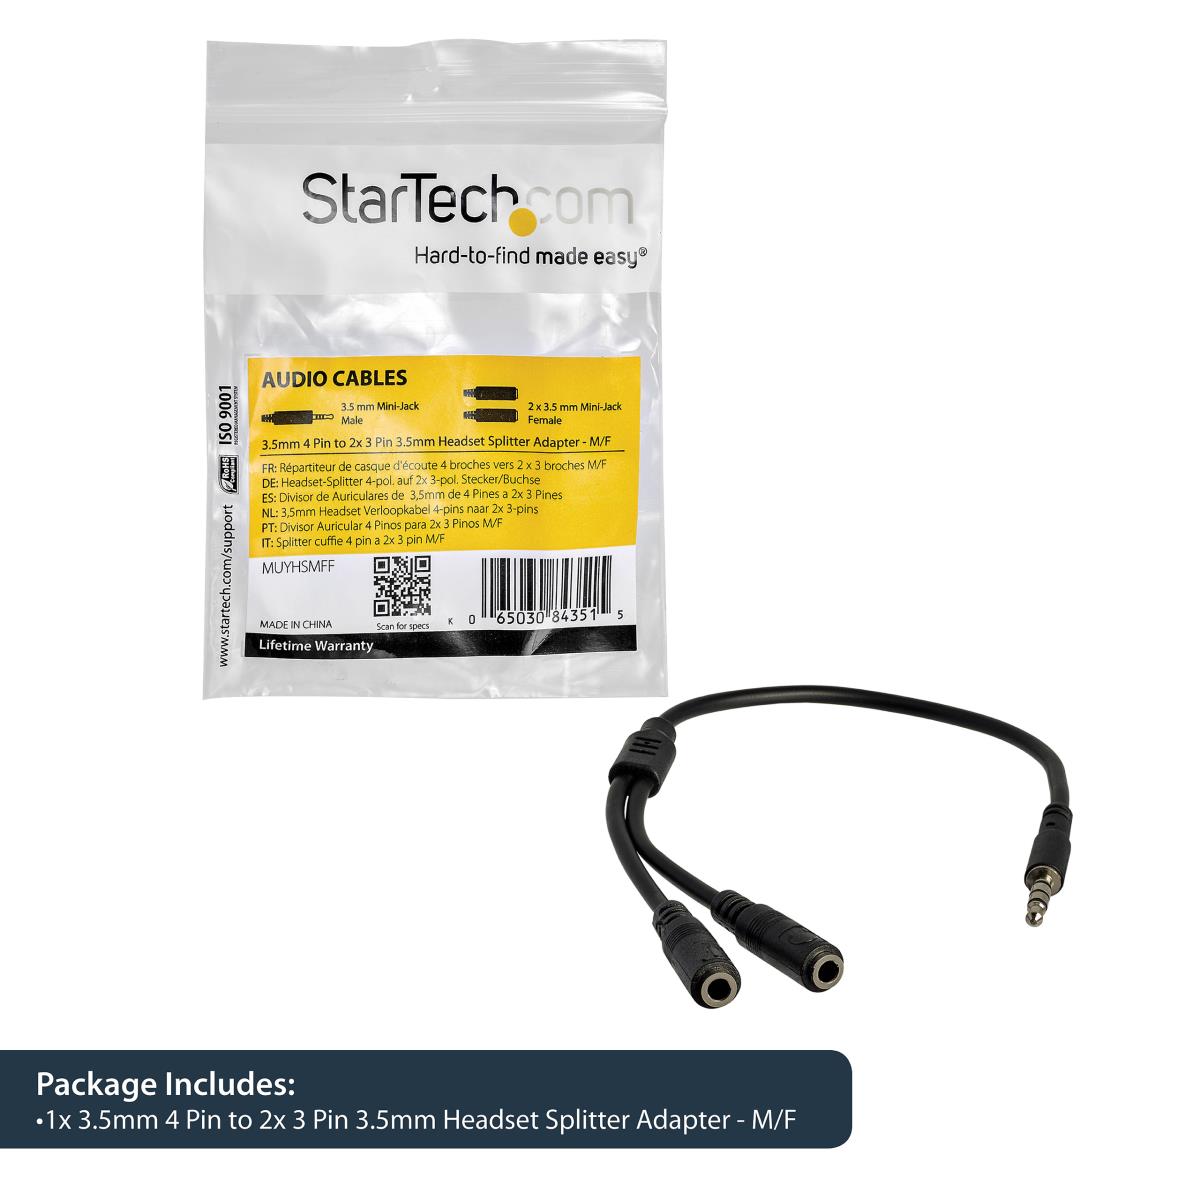 STARTECH.COM MUYHSMFF Headset Splitter Adapter 3.5mm 4